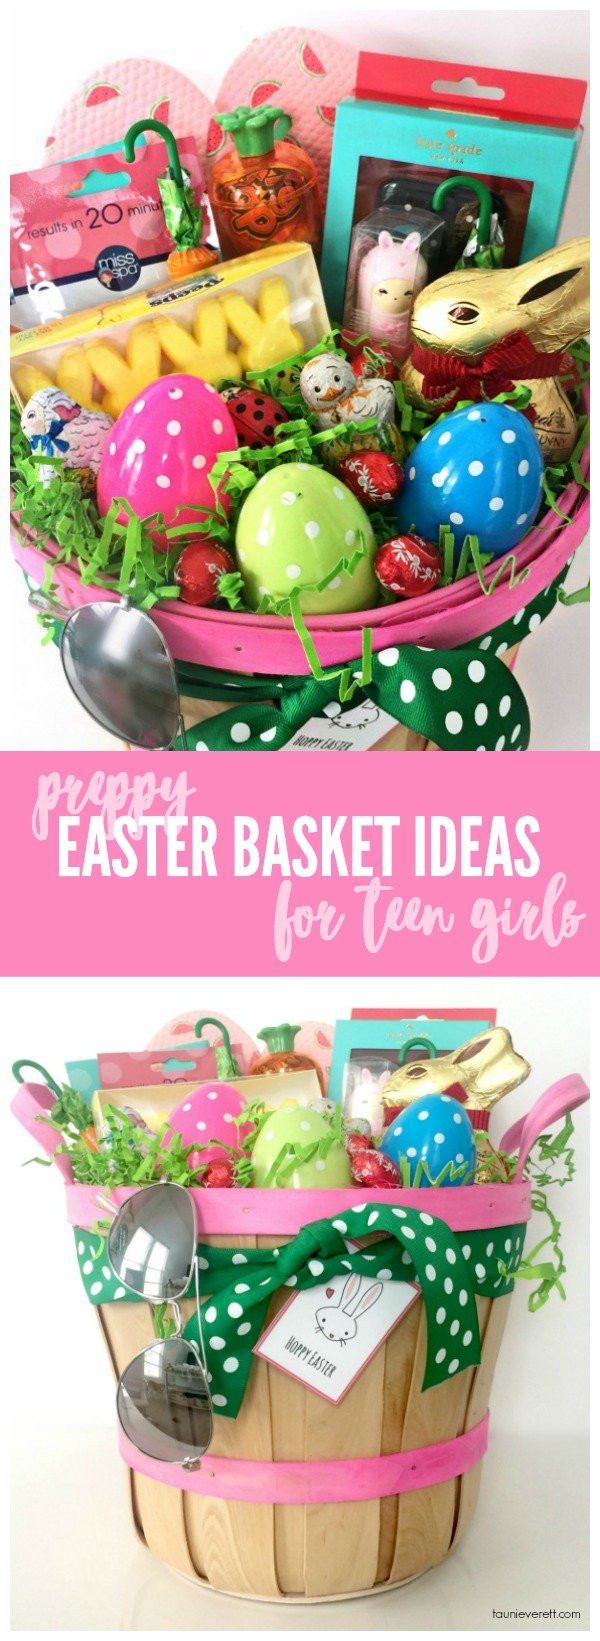 Easter Basket Ideas For Girls
 Preppy Easter Basket Ideas for Teen Girls